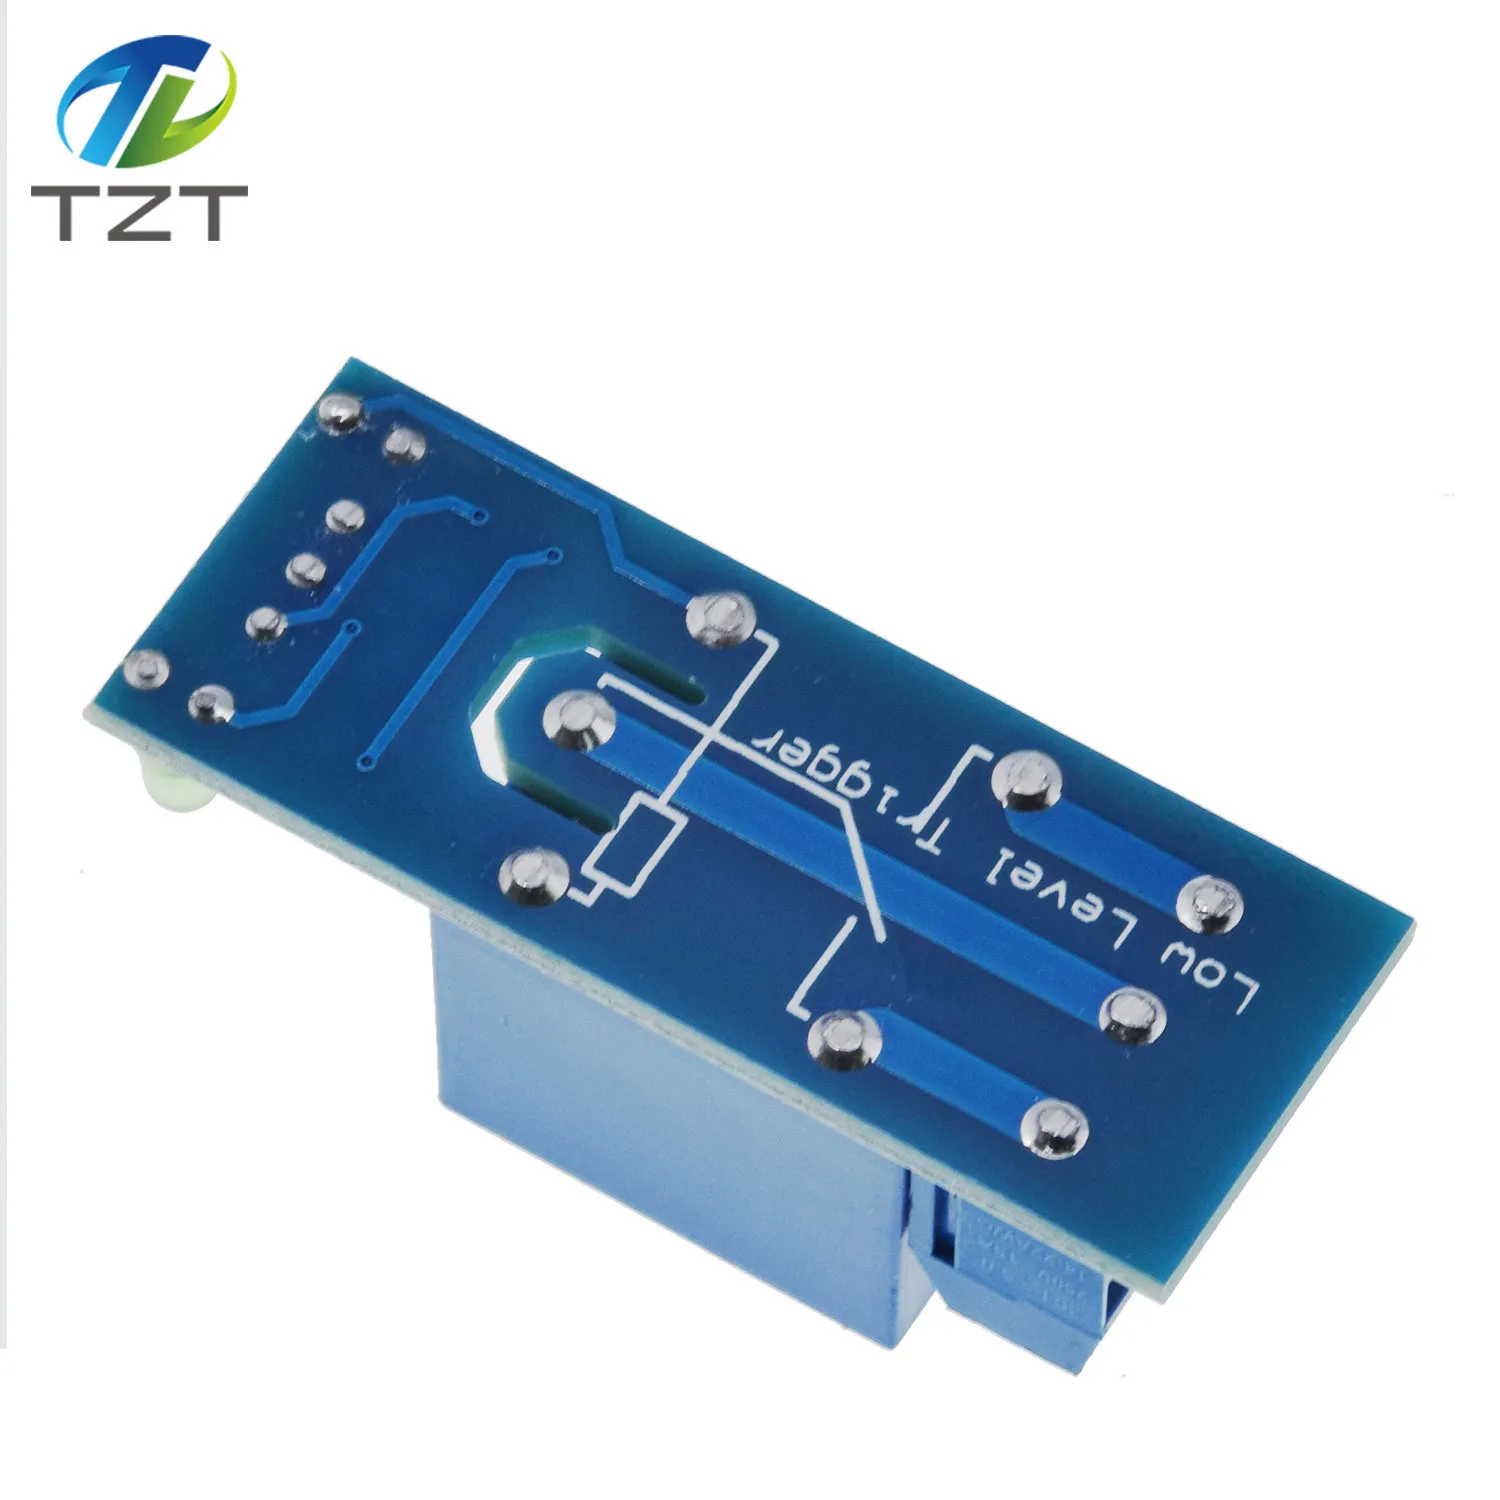 TZT 5 v 1 2 4 6 8 канала релейный модуль с оптопарой. Реле Выход 1/2/4/6/8 способ релейный модуль 12 V Для arduino синий